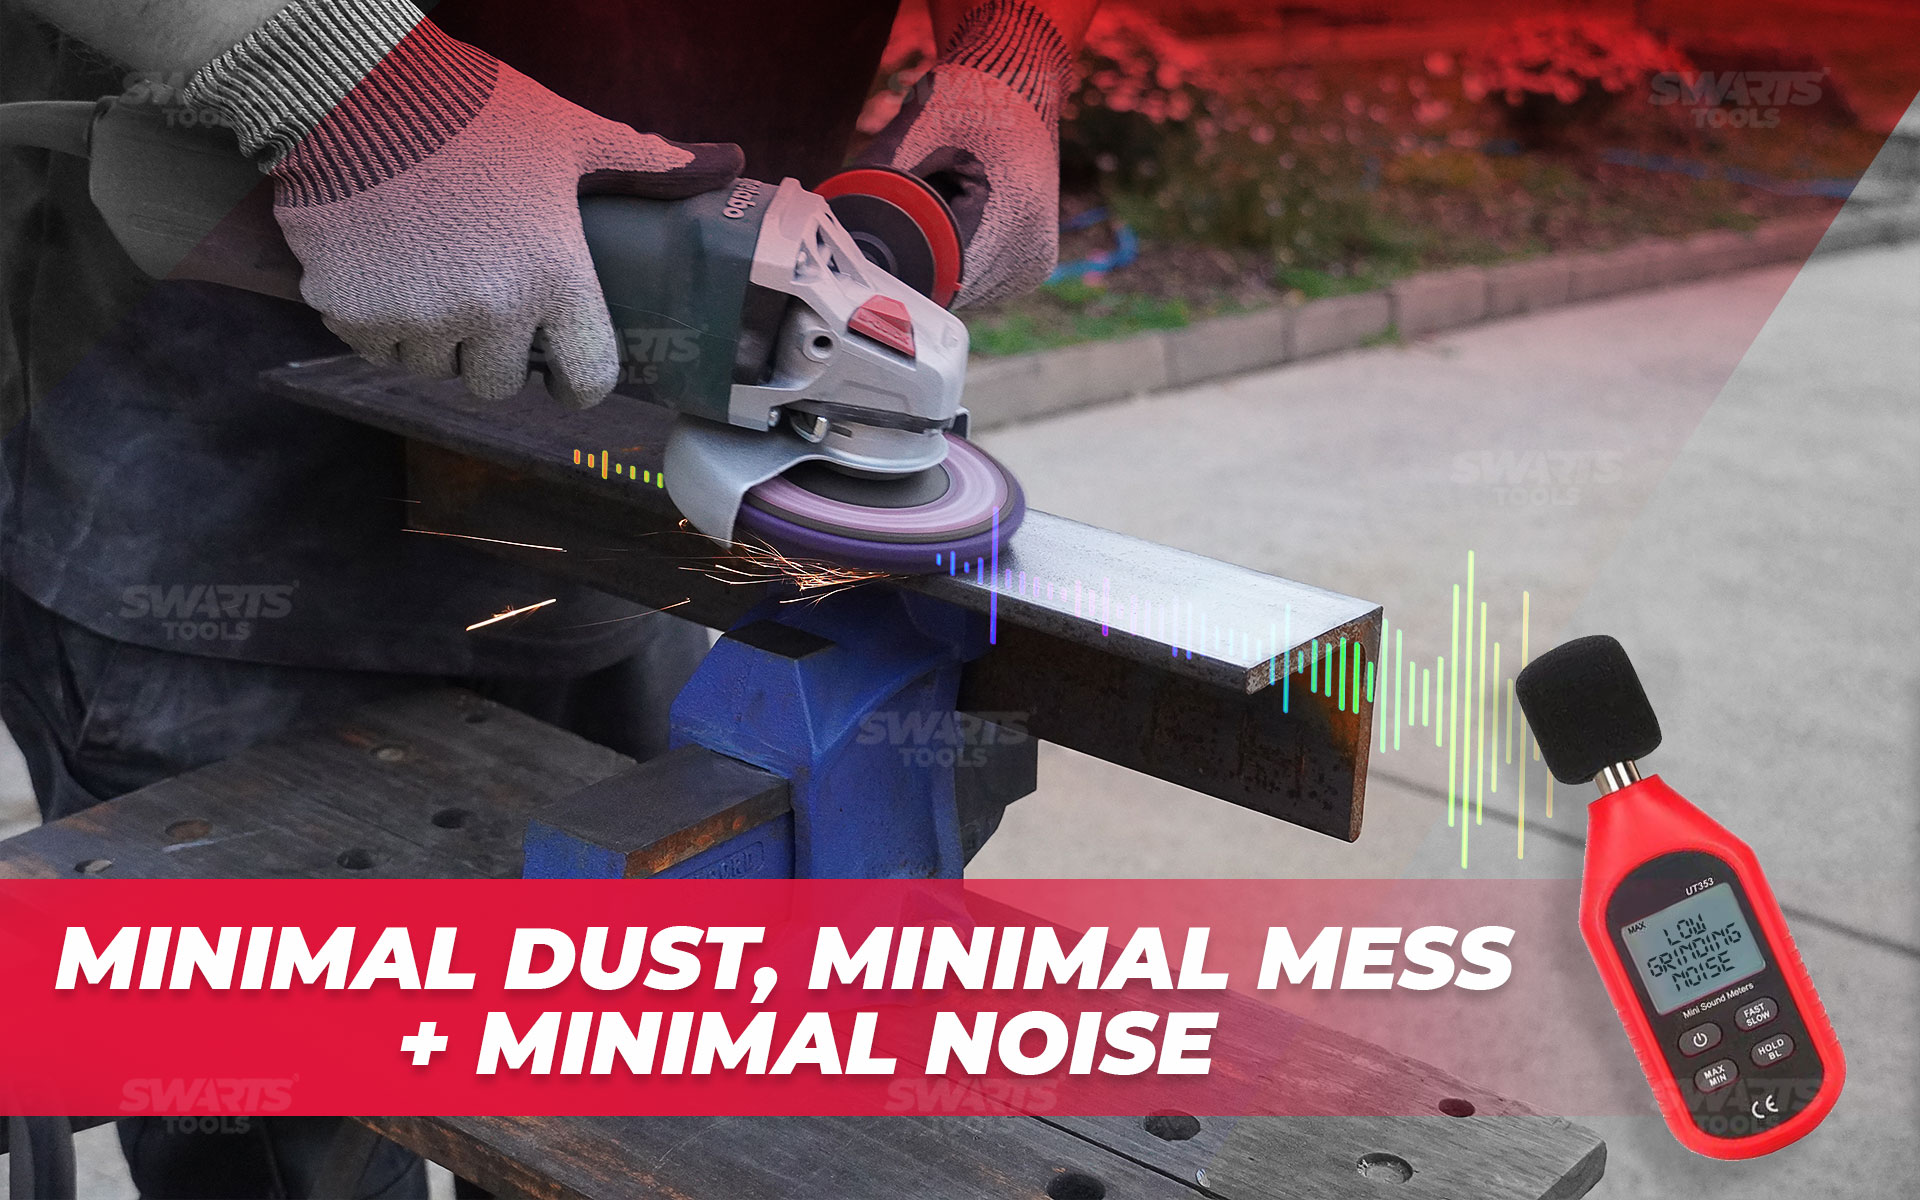 Minimal dust, minimal mess + minimal noise